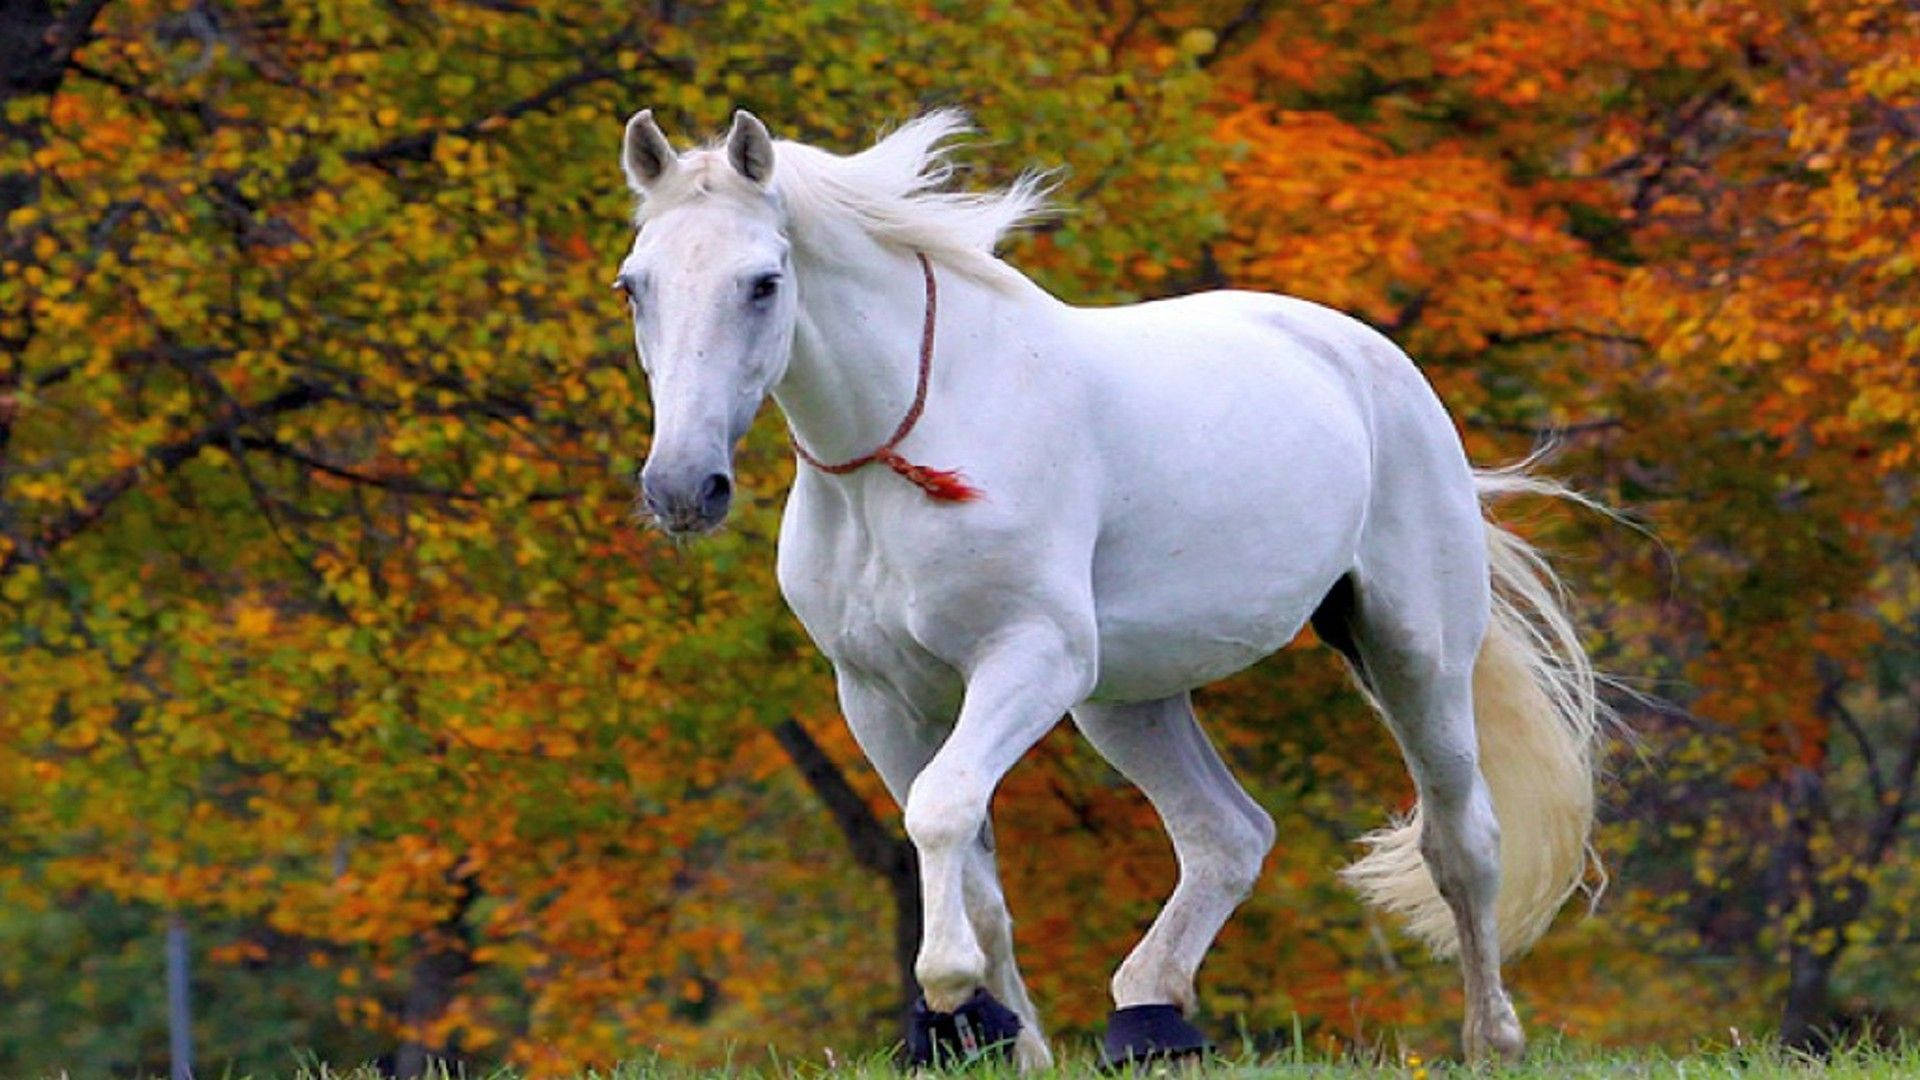 Little Cute White Horse